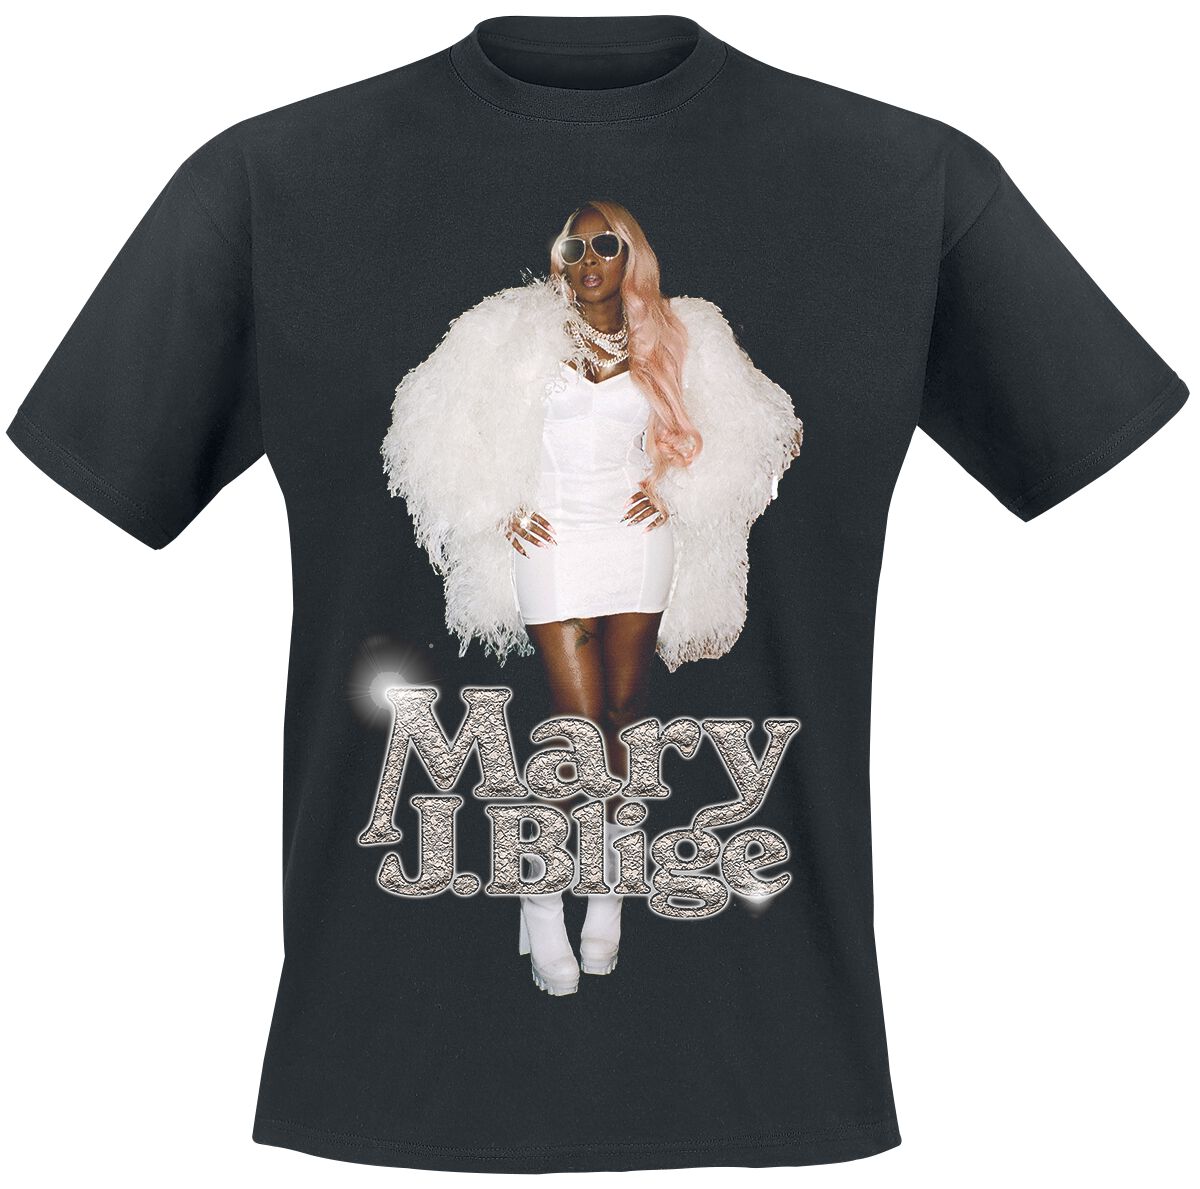 T-Shirt Manches courtes de Mary J. Blige - Photo Glossy - S à 3XL - pour Homme - noir